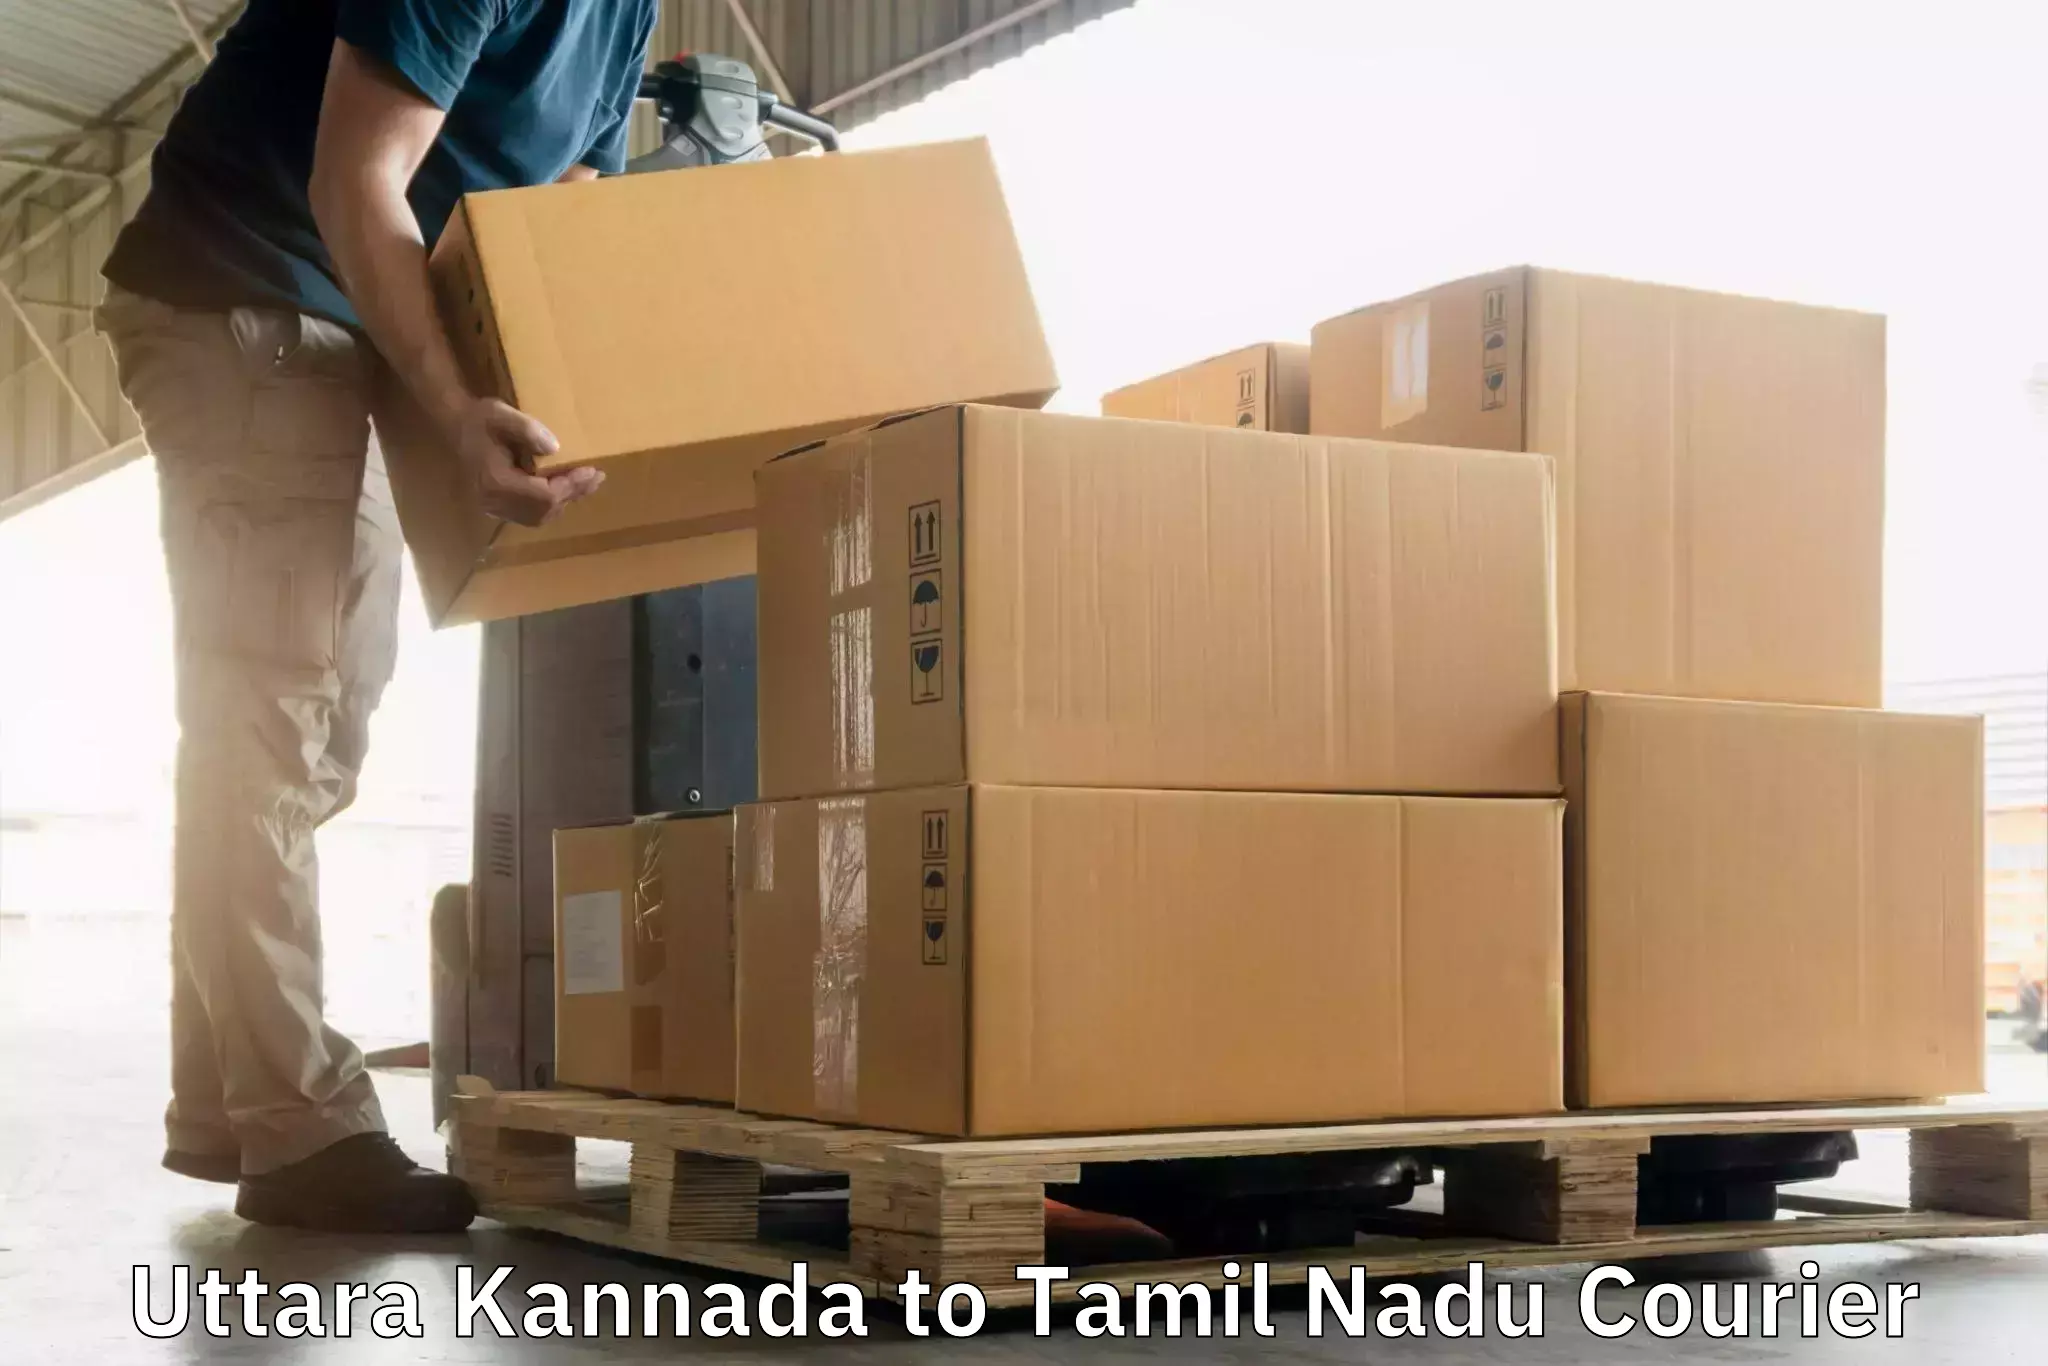 International parcel service Uttara Kannada to Thiruthuraipoondi